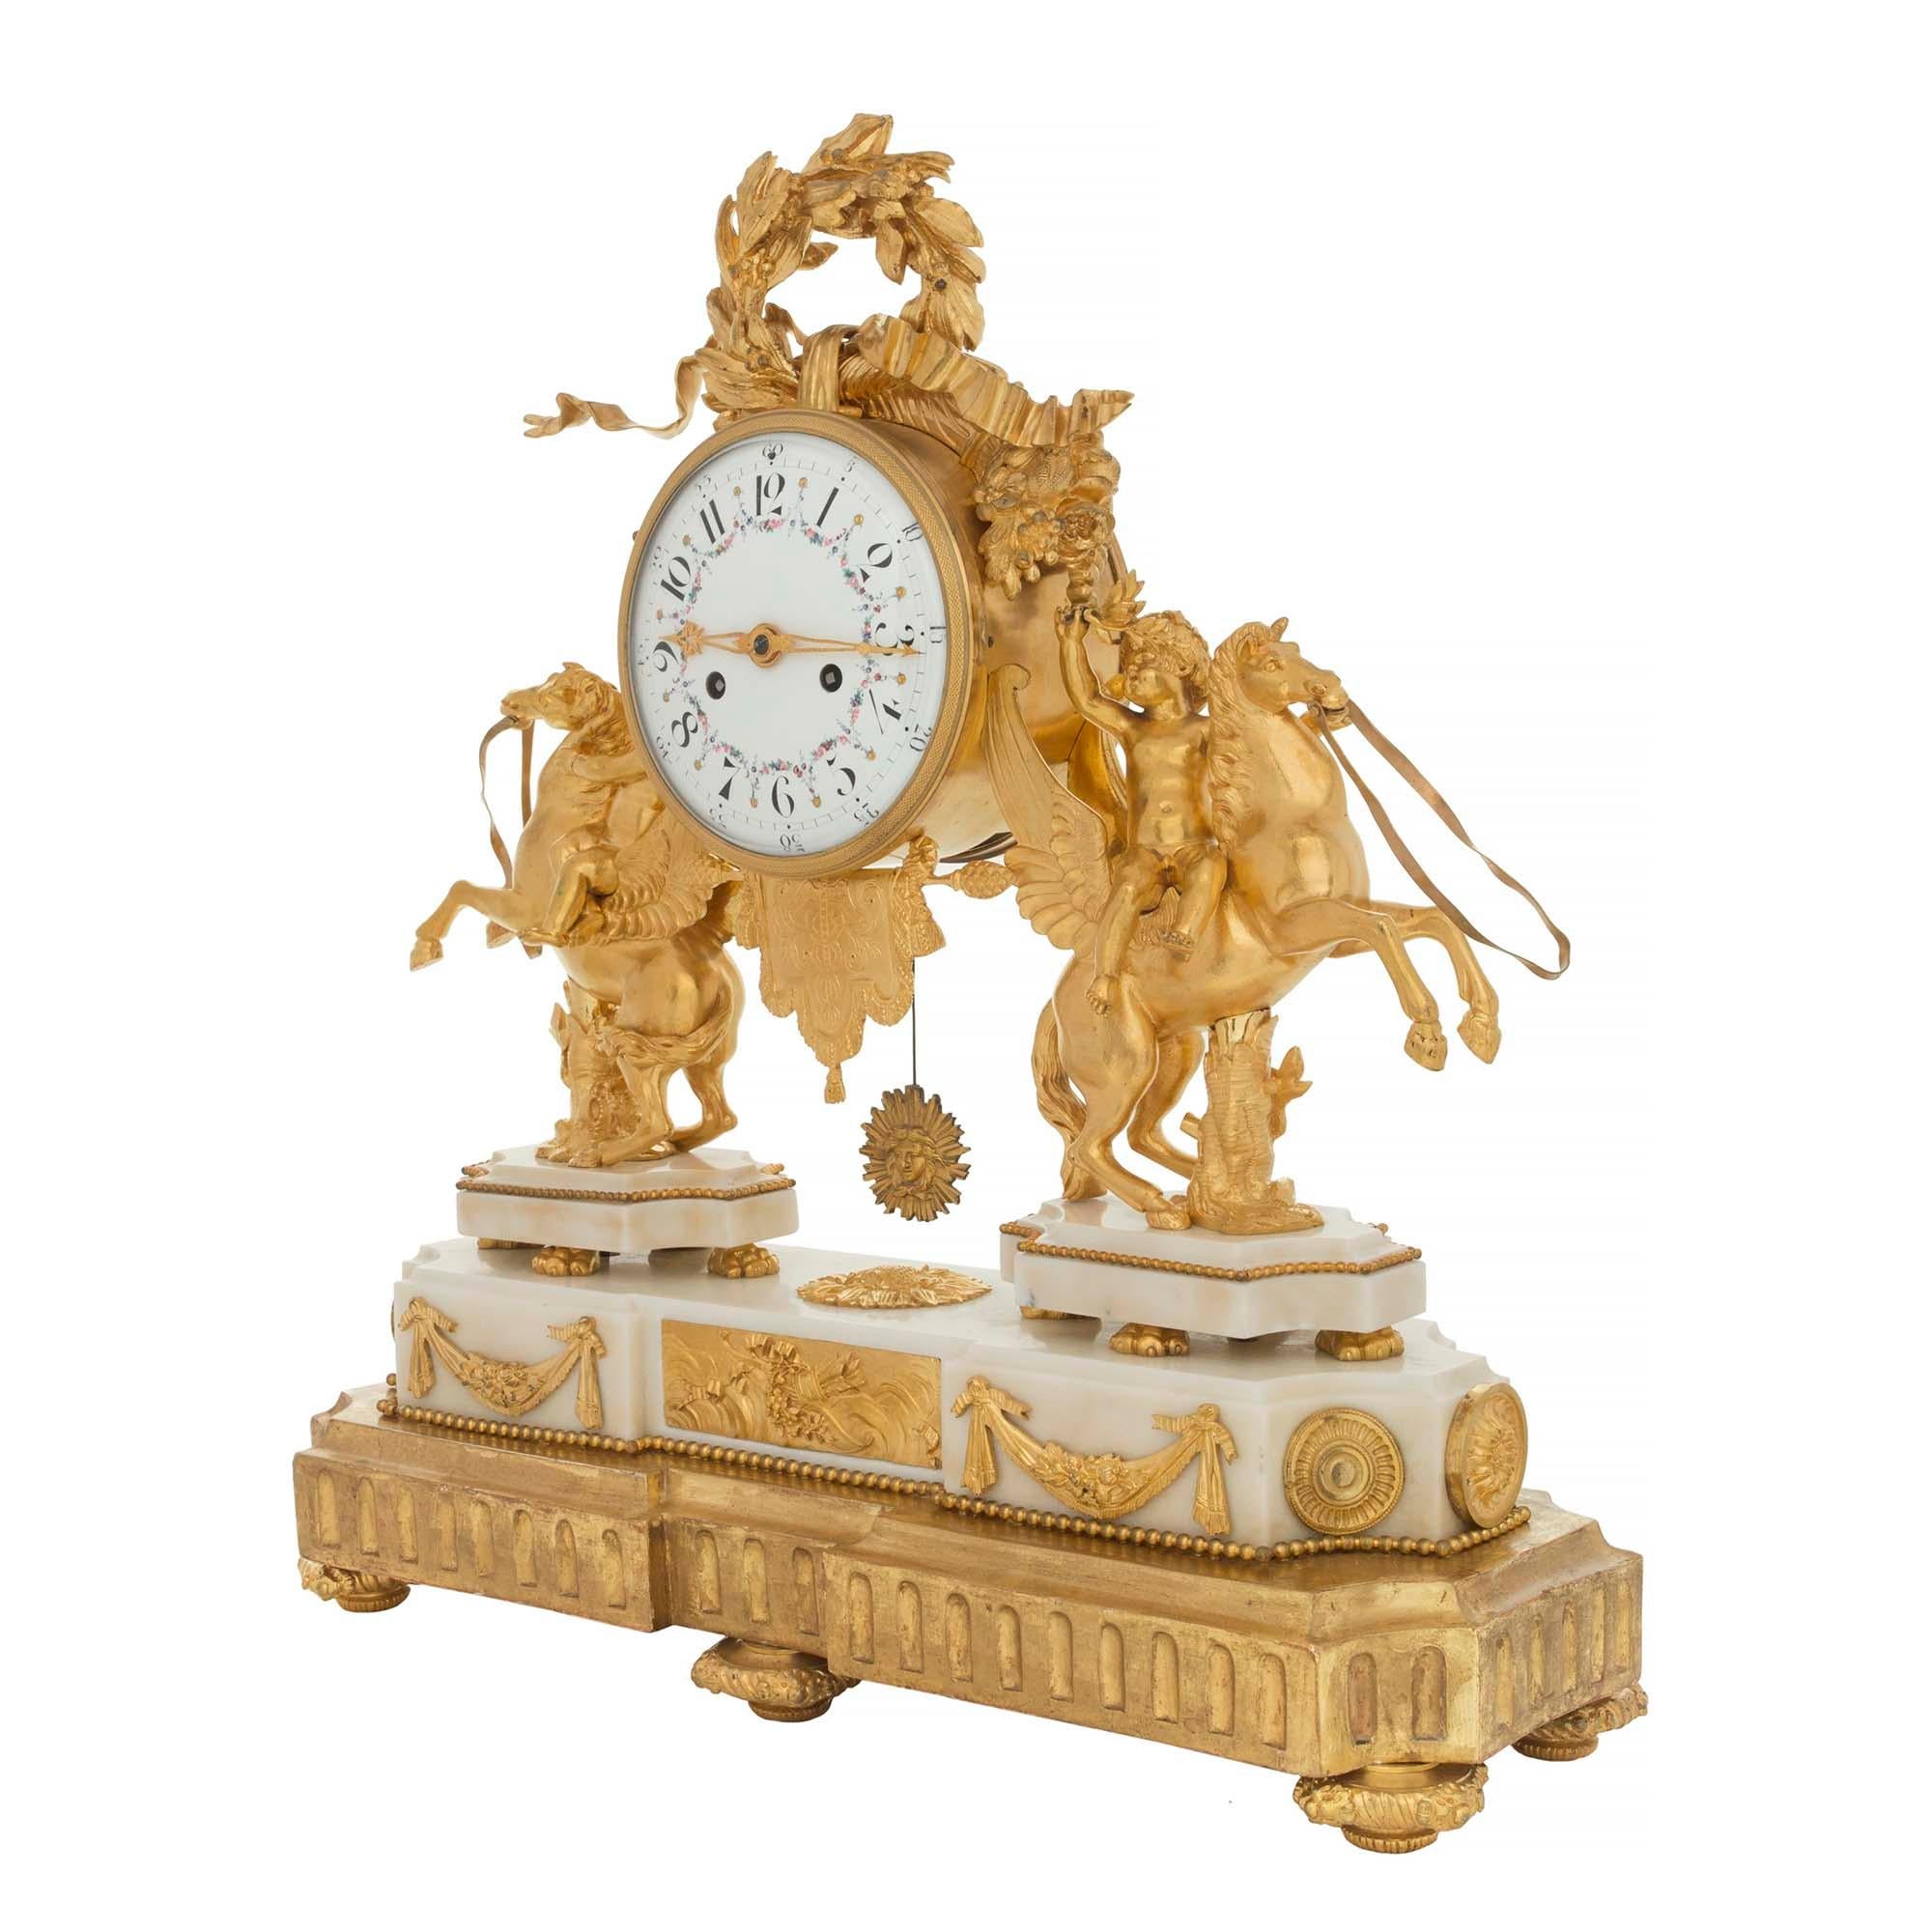 Superbe pendule française du début du XIXe siècle, de style Louis XVI, en bronze doré, marbre blanc de Carrare et bois doré. L'horloge est surélevée par une fine base en bois doré qui imite la forme la plus décorative de l'horloge. La base de